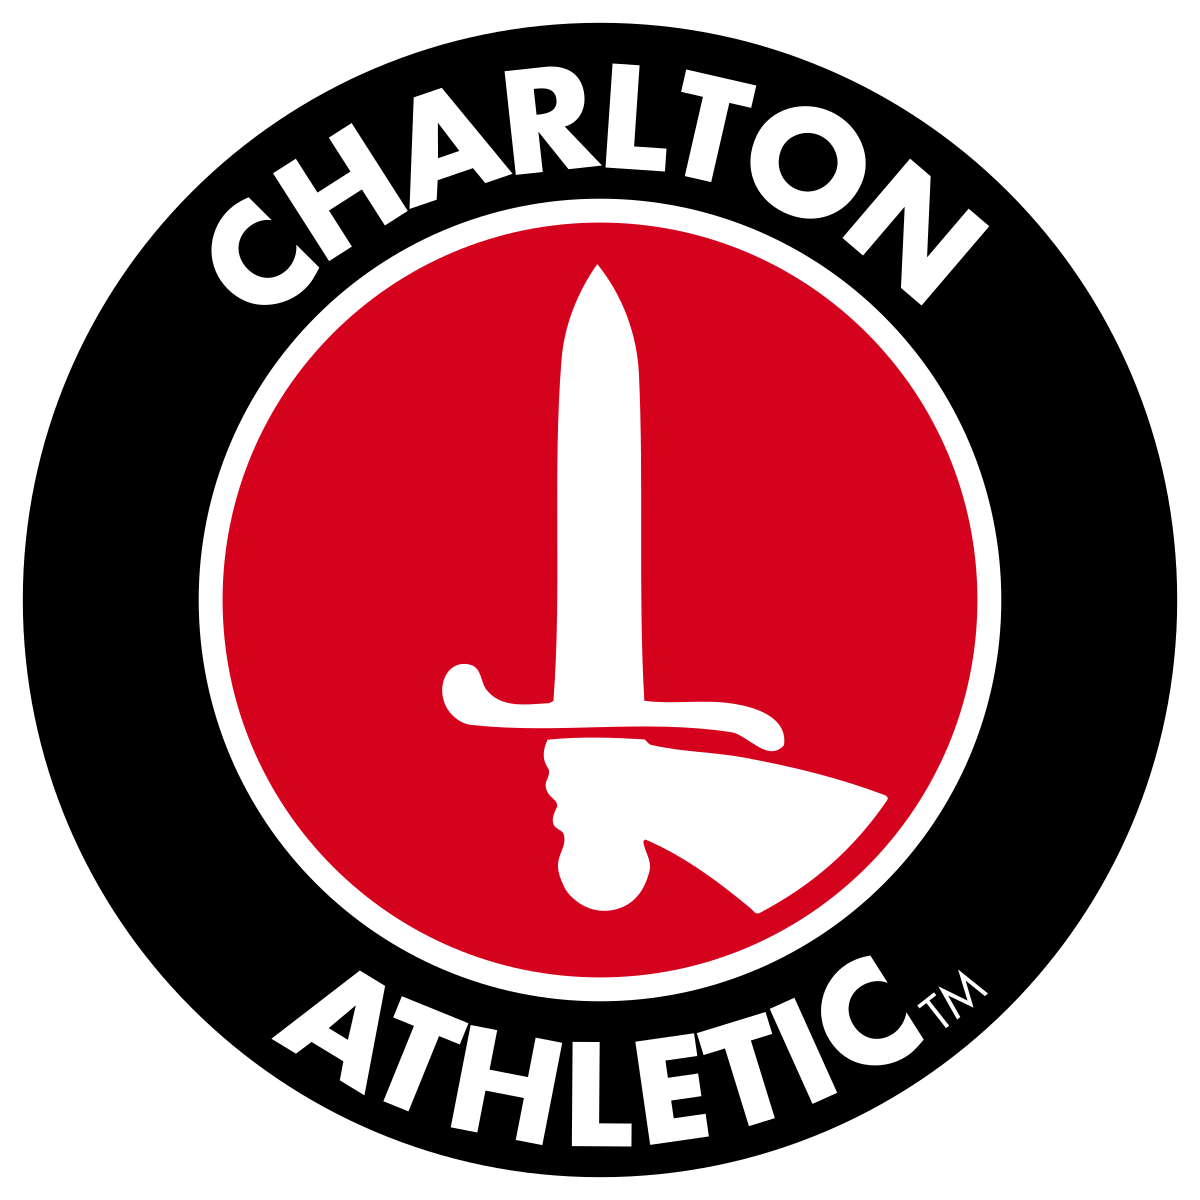 Commentaire: Charlton Athletic devrait envisager de rechercher un nouvel agent libre pour renforcer la zone à problèmes